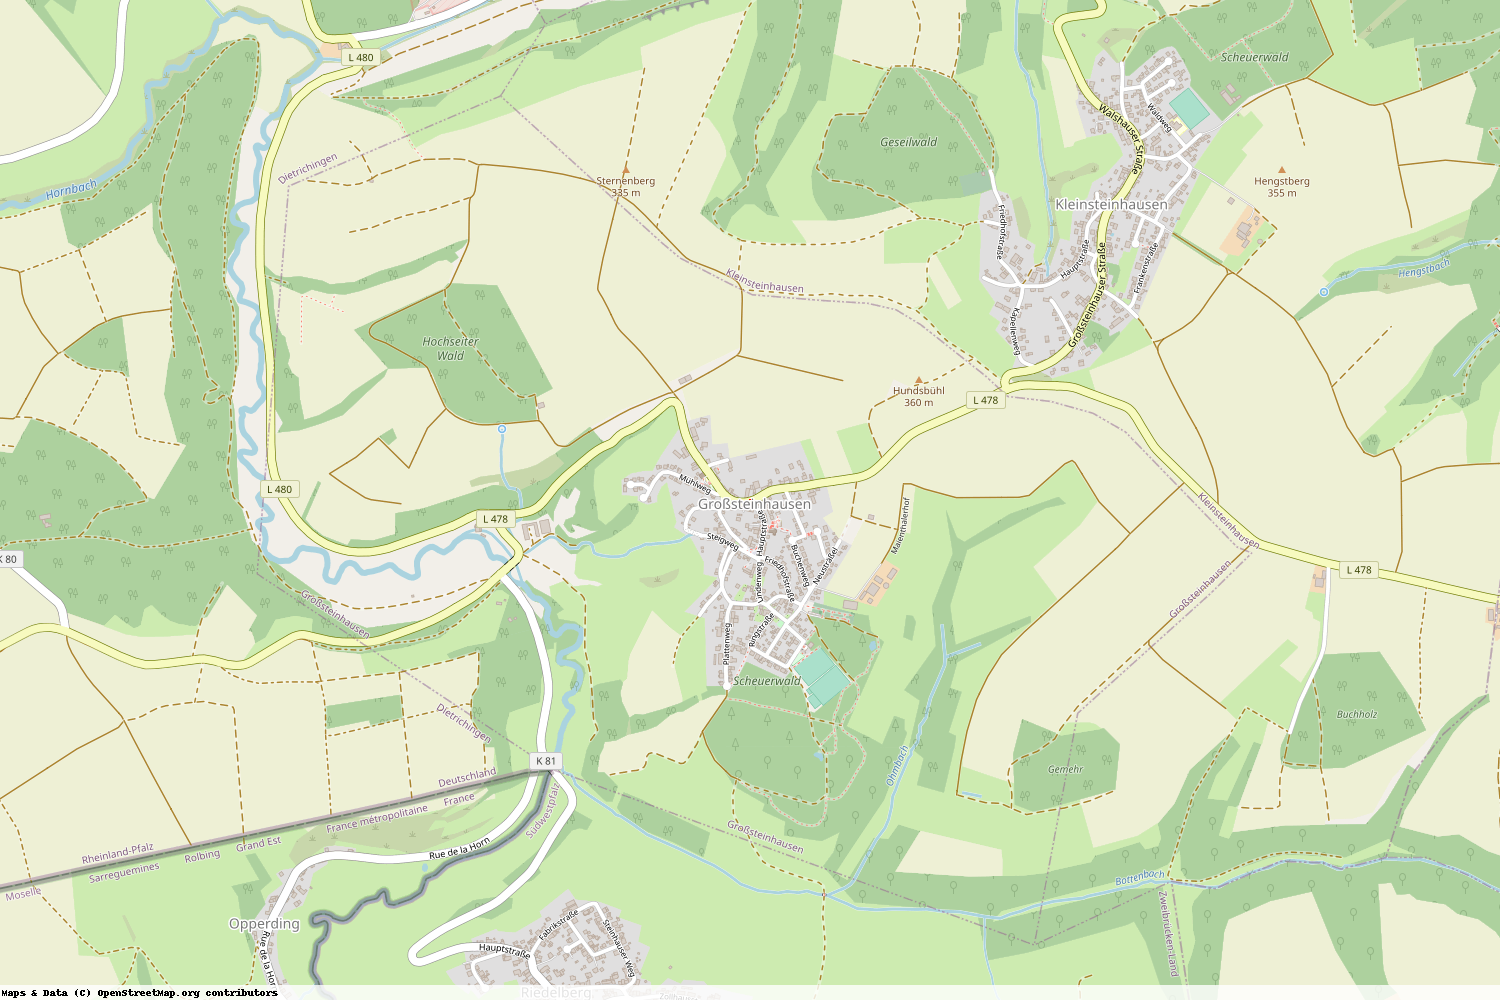 Ist gerade Stromausfall in Rheinland-Pfalz - Südwestpfalz - Großsteinhausen?